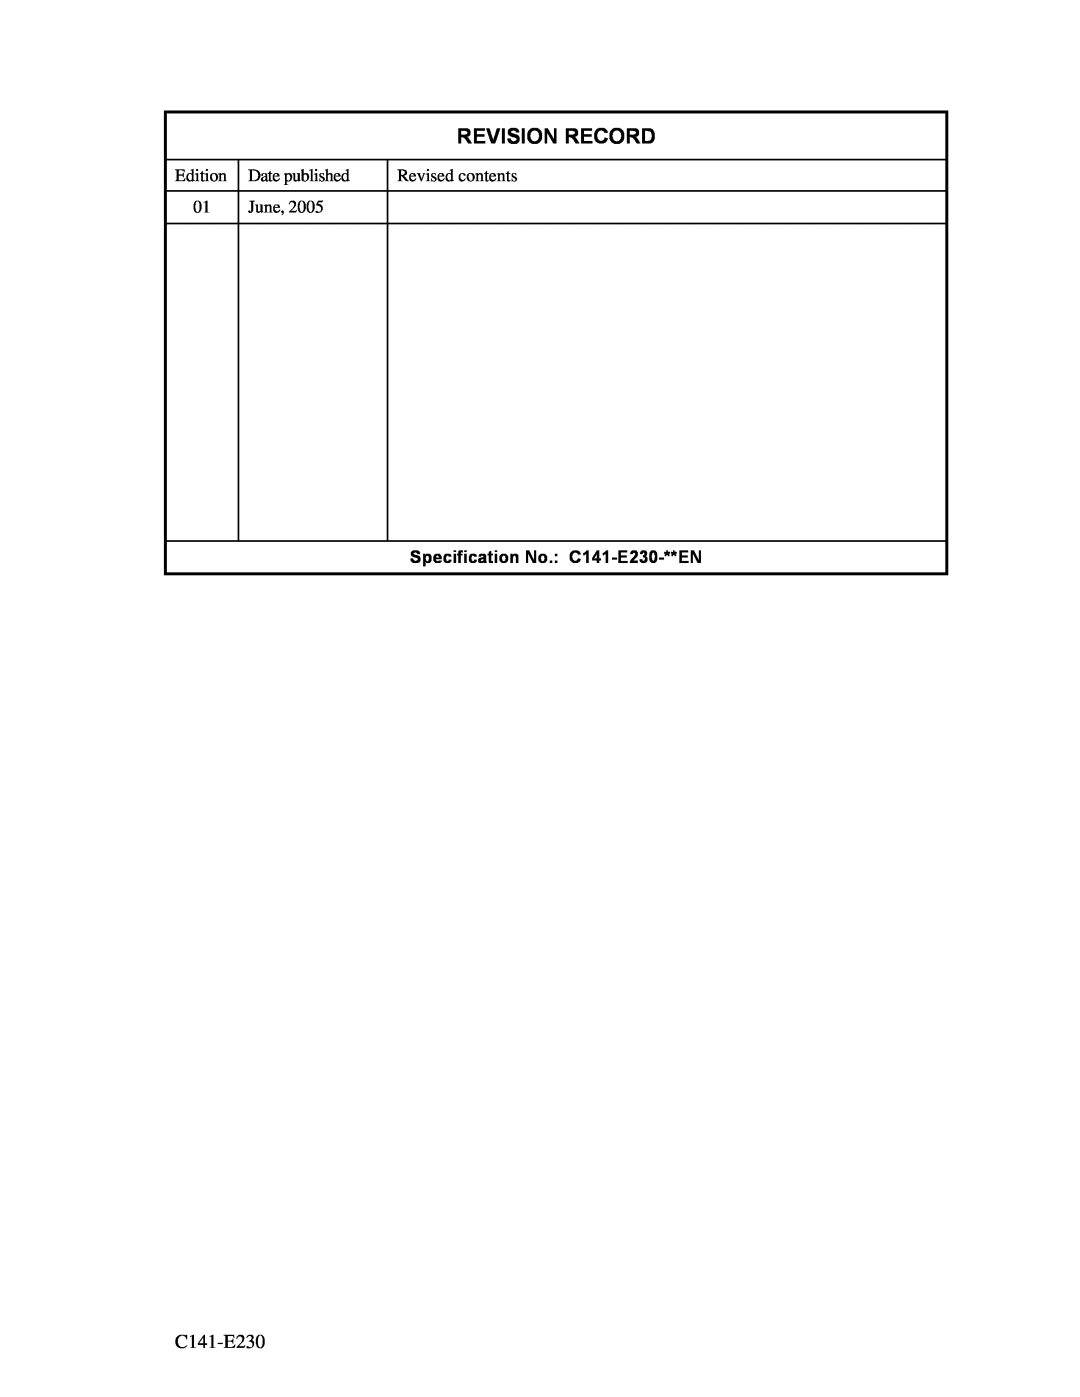 Fujitsu MAY2036RC, MAY2073RC manual Revision Record, Specification No. C141-E230-**EN 